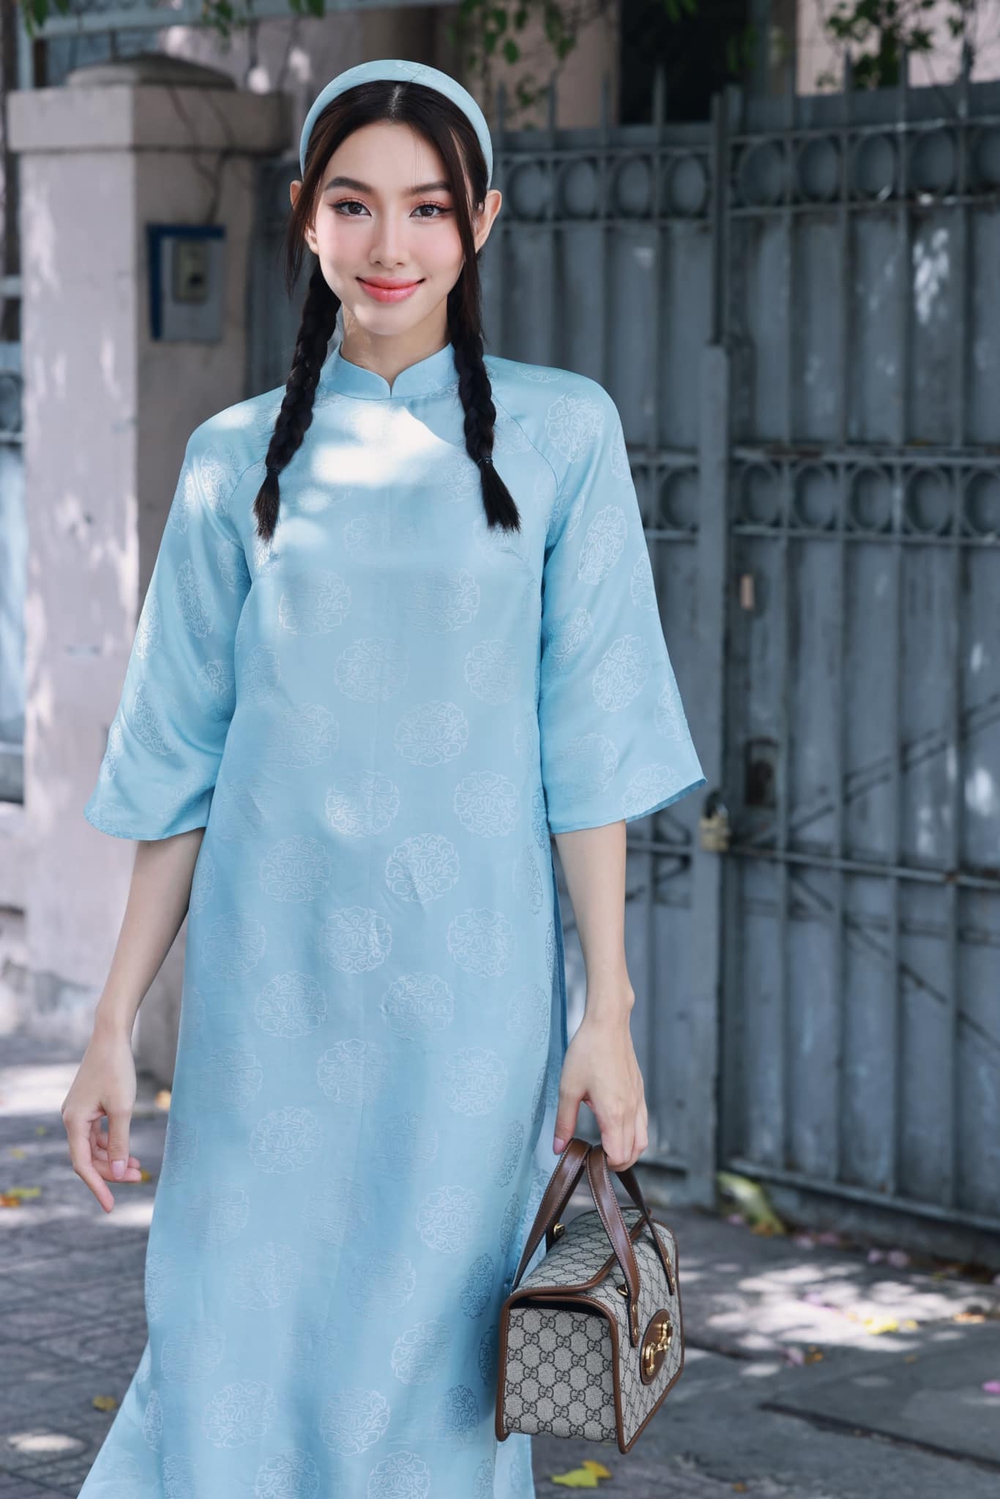 Mê mệt loạt áo dài Tết của Hoa hậu Thùy Tiên: Toàn đồ local brand quen mặt, thiết kế điệu đà cứ diện là xinh - Ảnh 1.